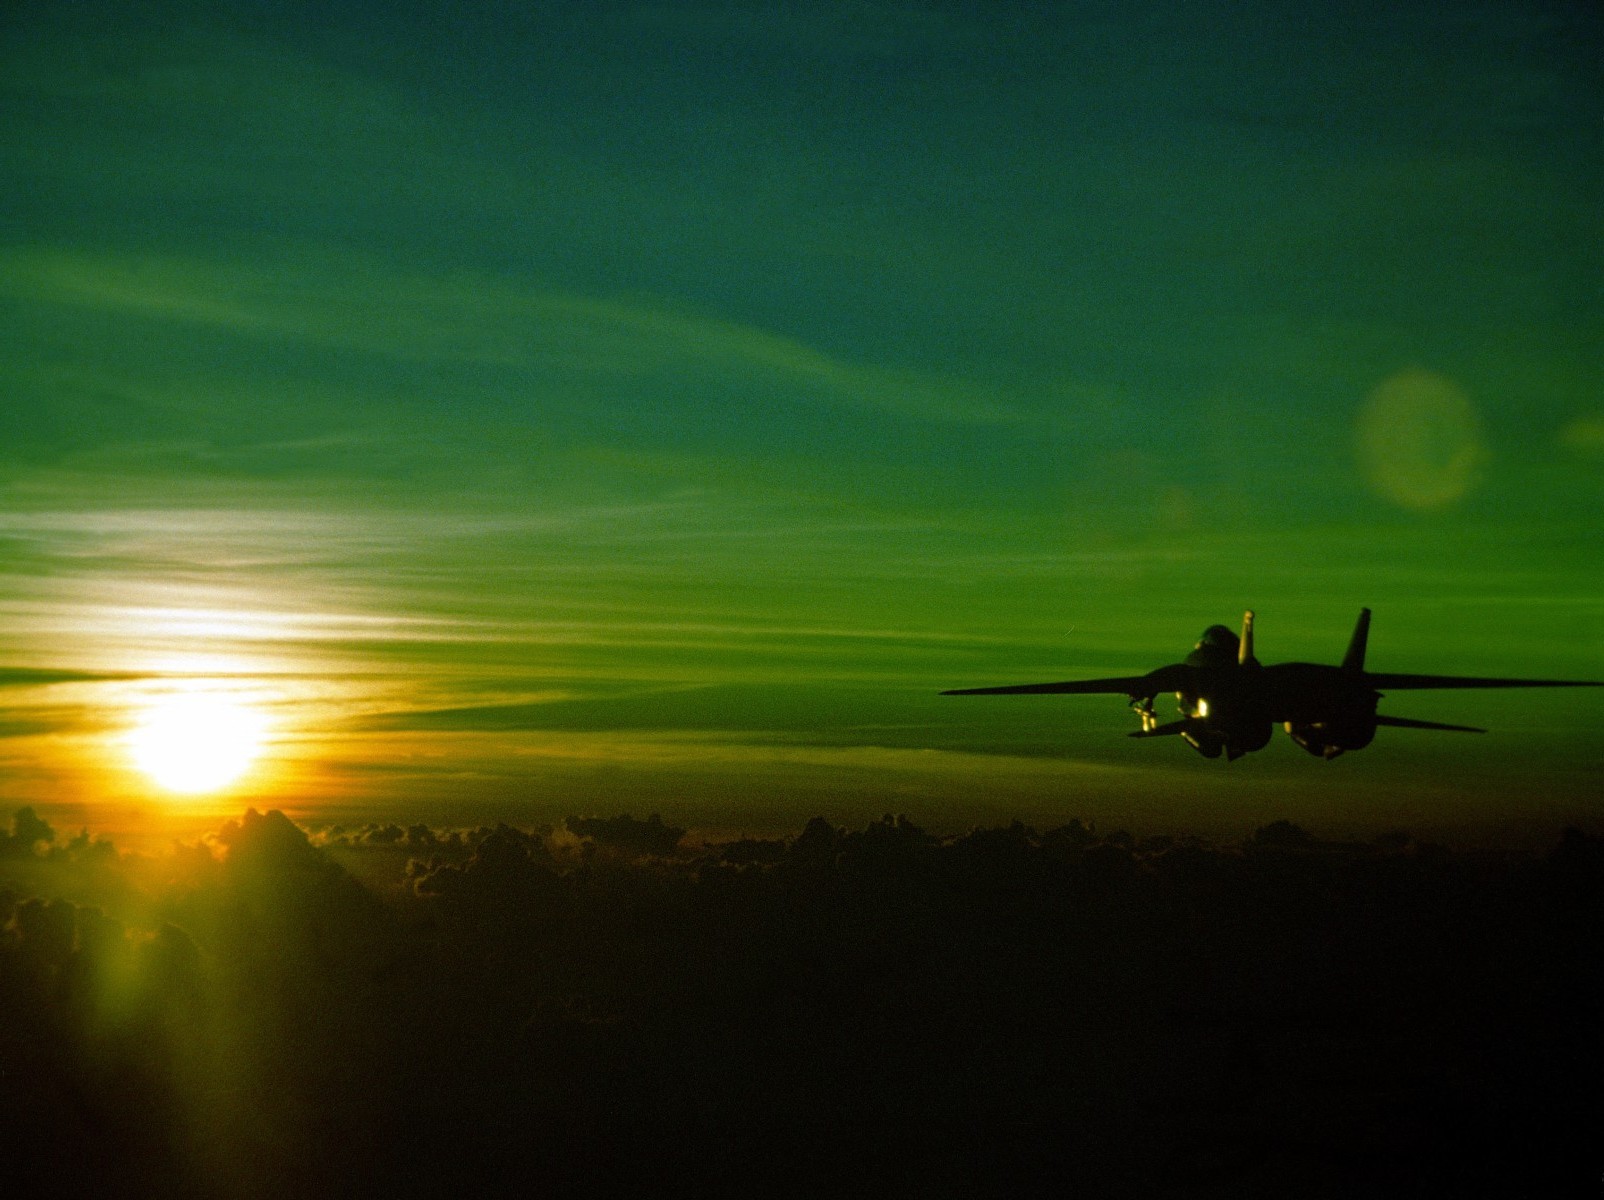 grumman f 14 tomcat sunset green jet aircraft Wallpaper HD / Desktop and Mobile Background